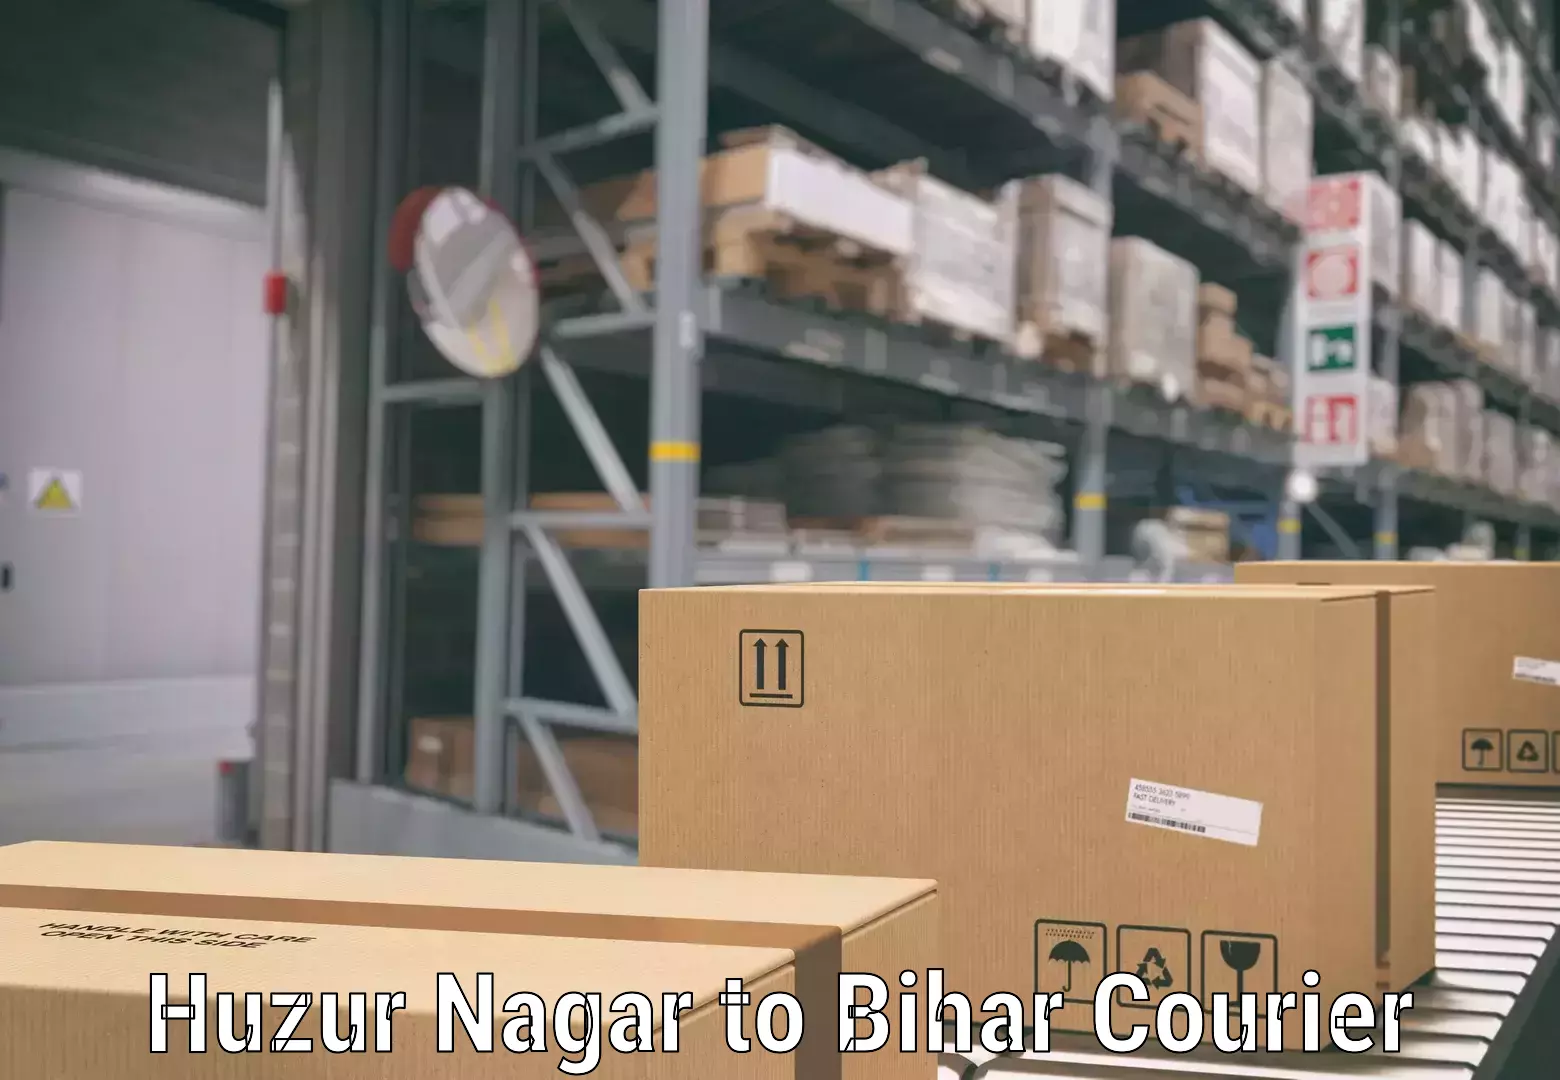 Baggage shipping service Huzur Nagar to Bihar